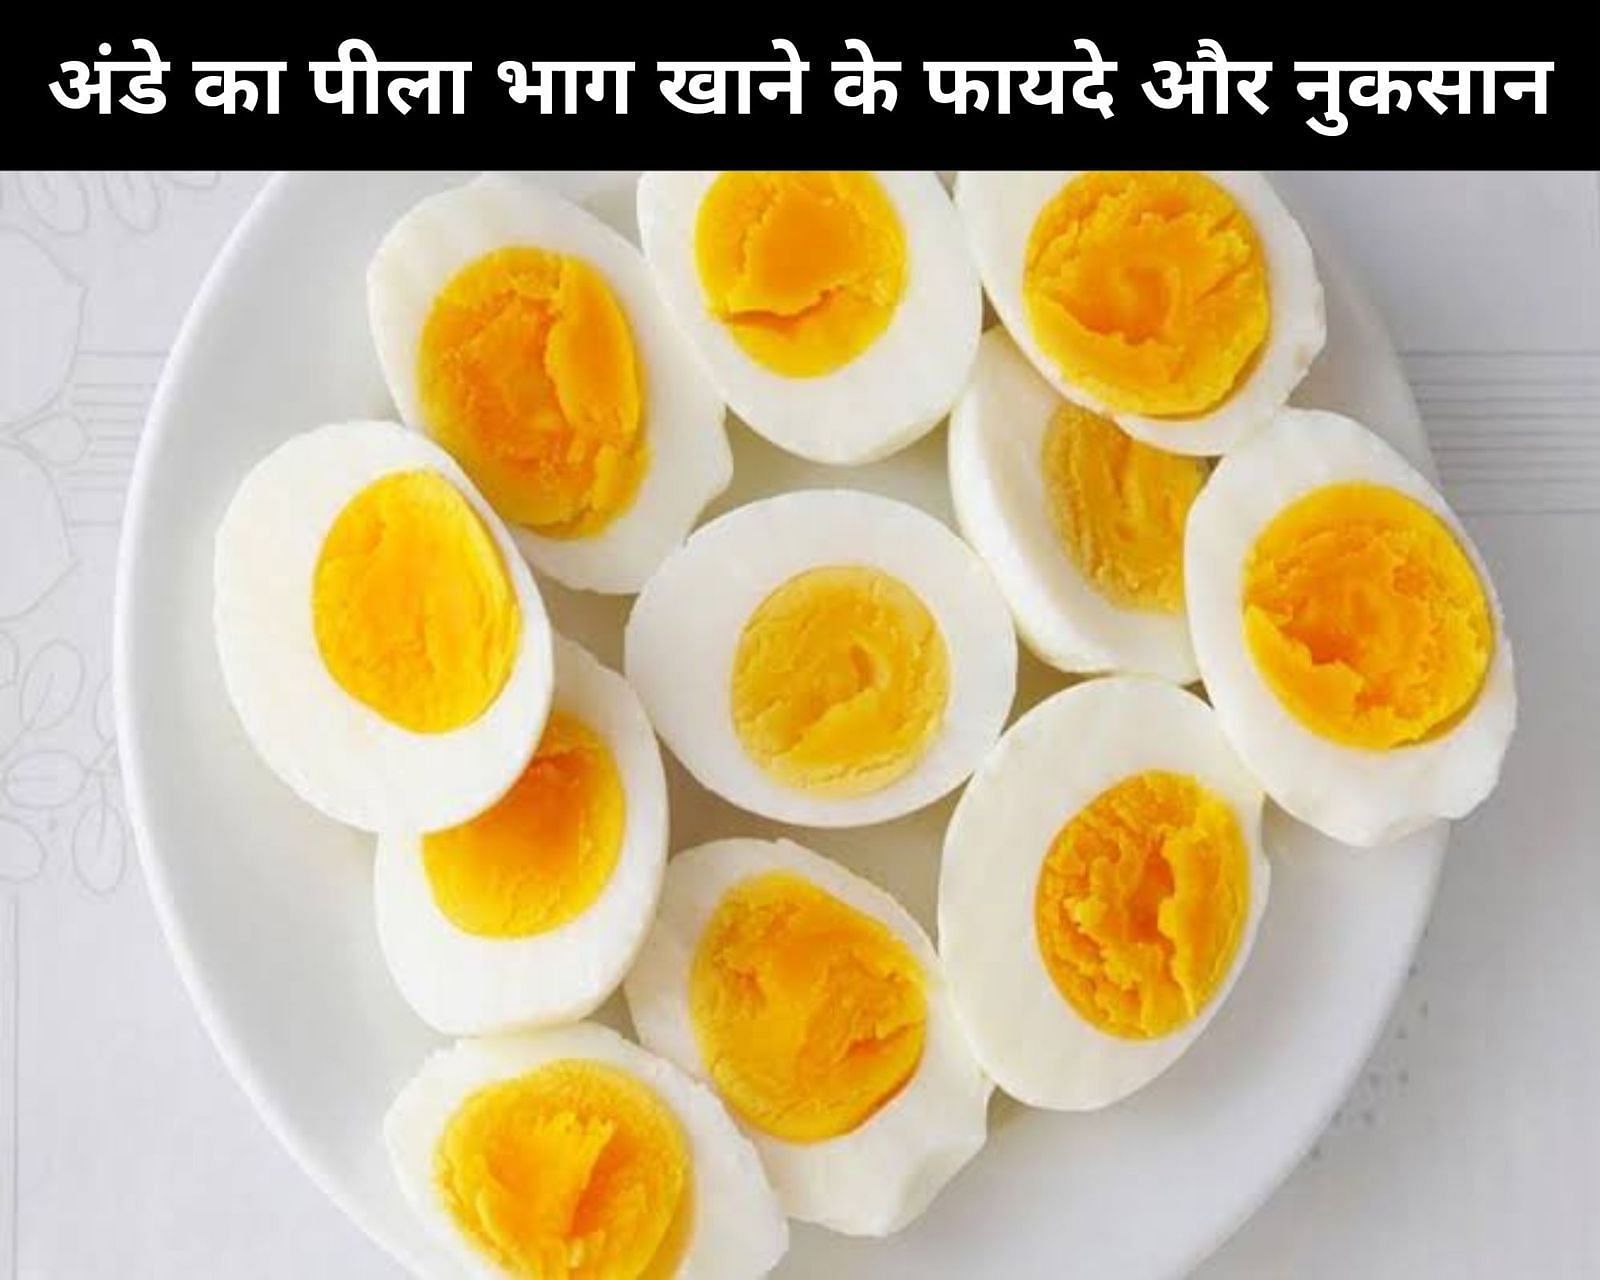 अंडे का पीला भाग खाने के फायदे और नुकसान (फोटो - sportskeedaहिन्दी)